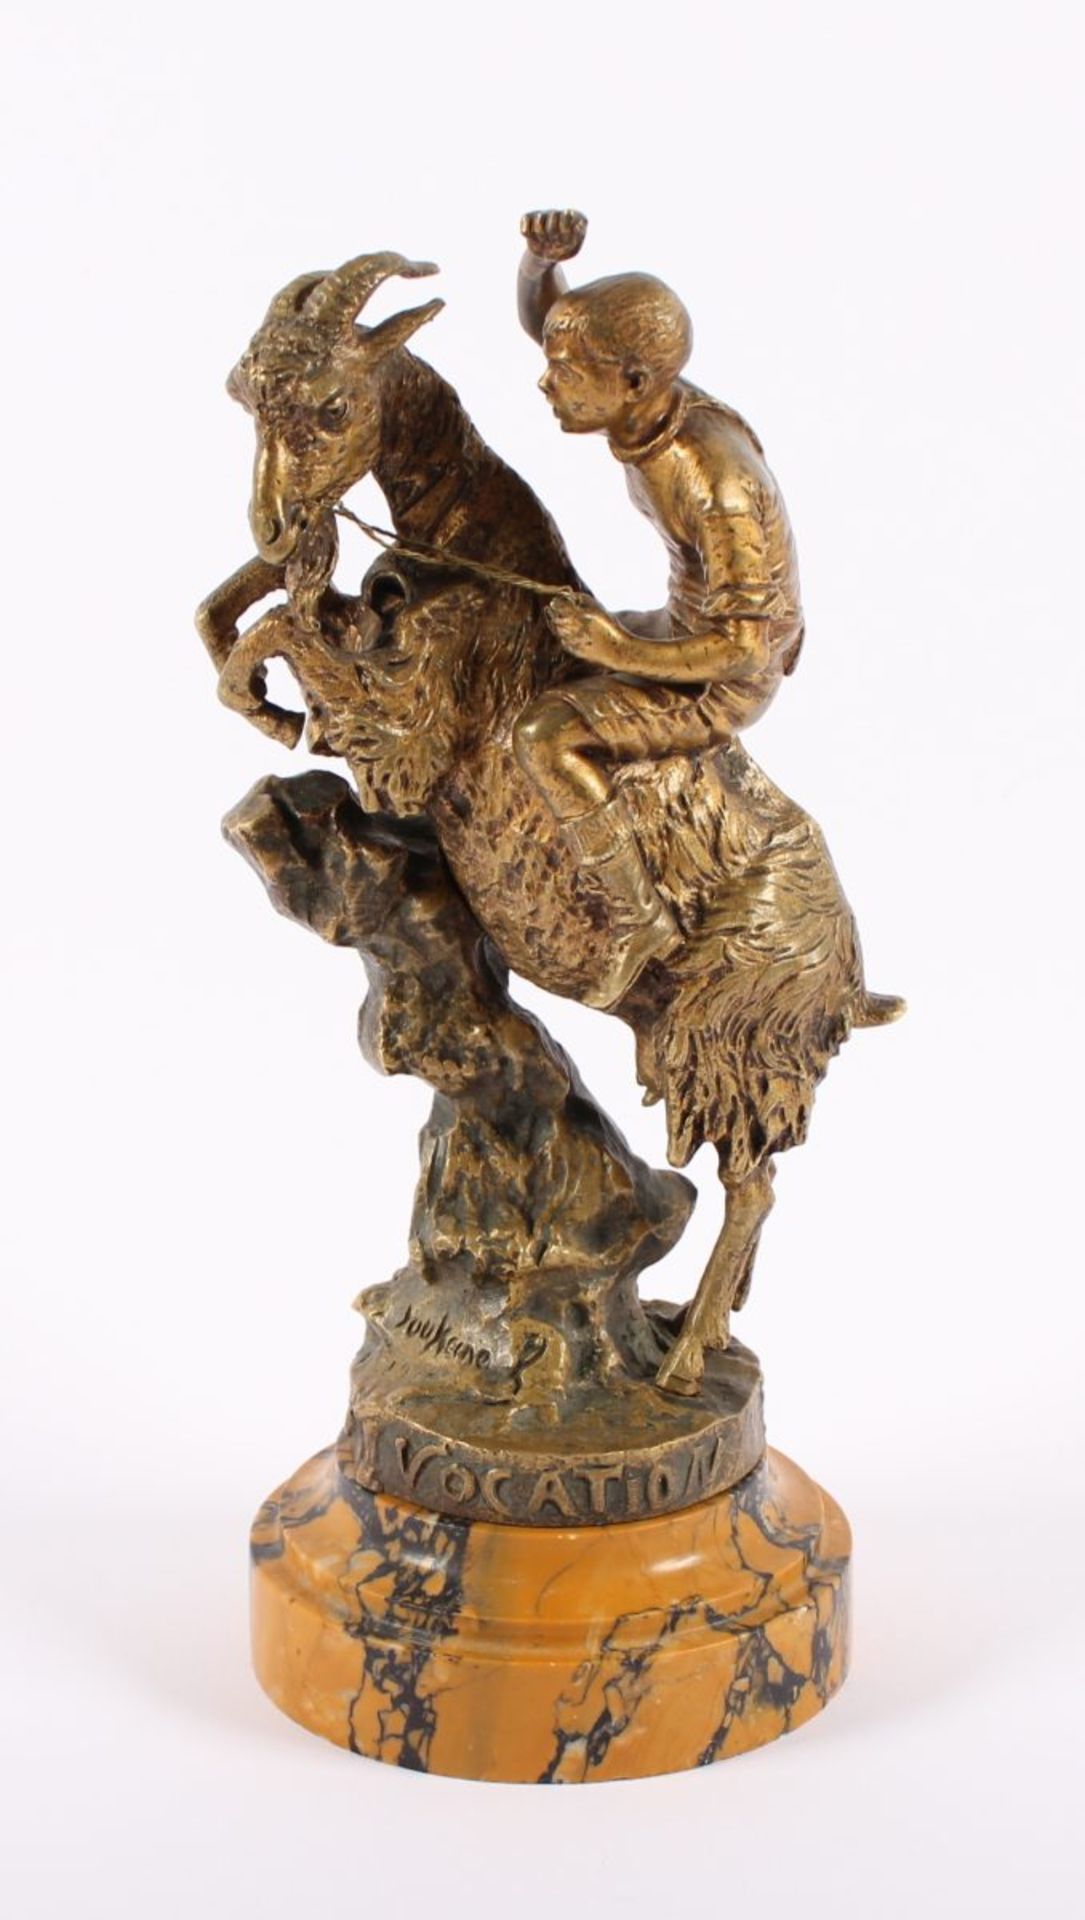 JUNGE AUF ZIEGENBOCK, Bronze, auf Marmorsockel montiert, H 23,5, bez. "Vocation", unleserlich - Bild 2 aus 5